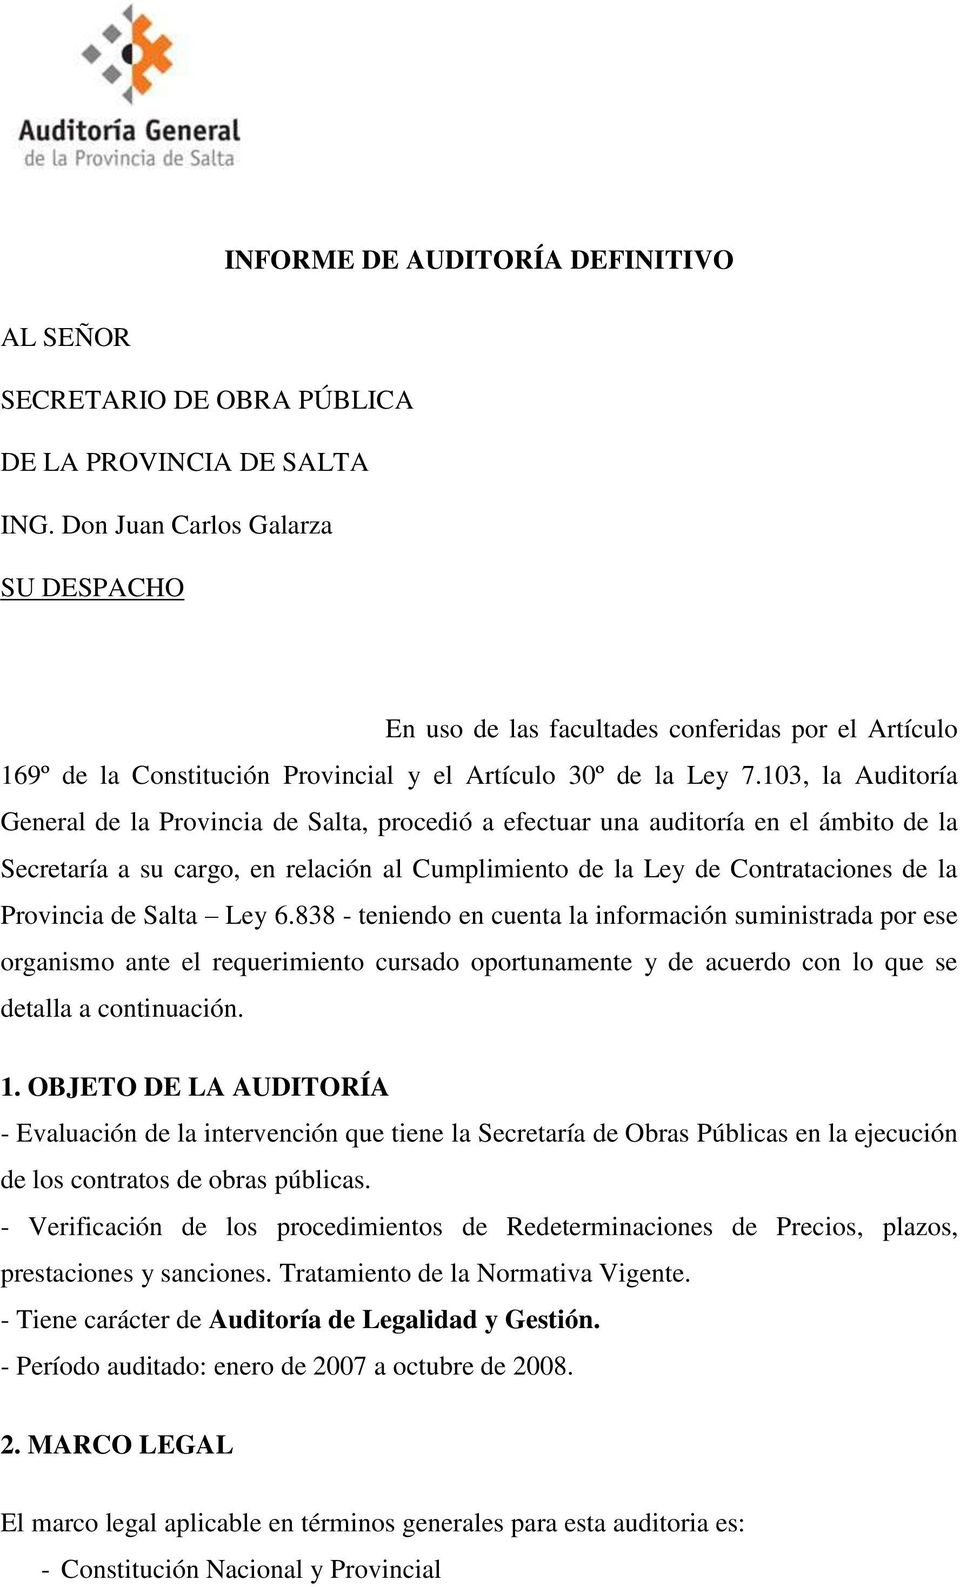 103, la Auditoría General de la Provincia de Salta, procedió a efectuar una auditoría en el ámbito de la Secretaría a su cargo, en relación al Cumplimiento de la Ley de Contrataciones de la Provincia